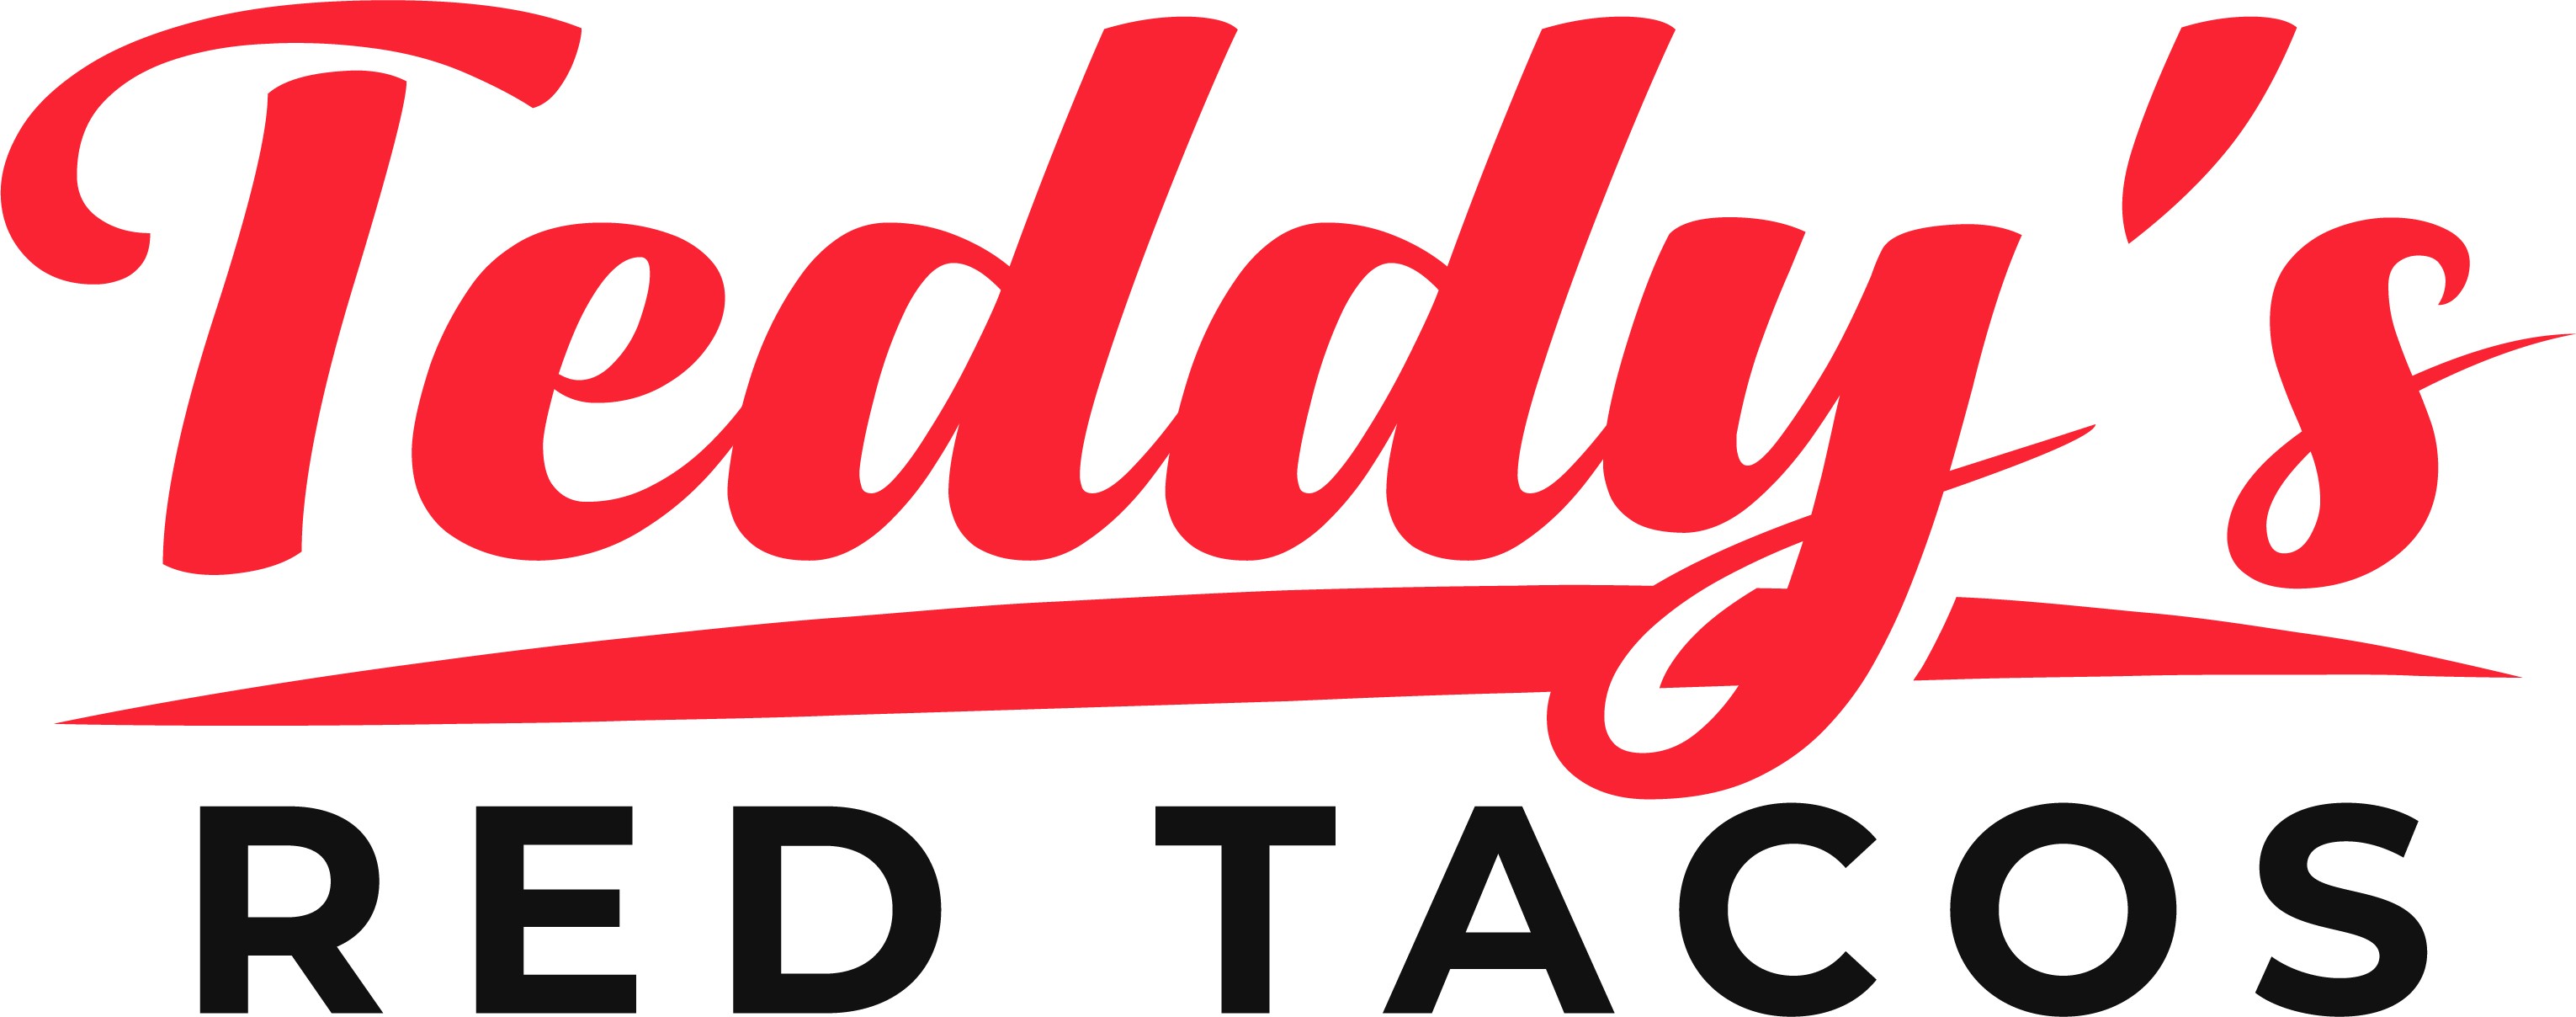 Teddy's Red Tacos - Hollywood 1292 South La Brea Avenue